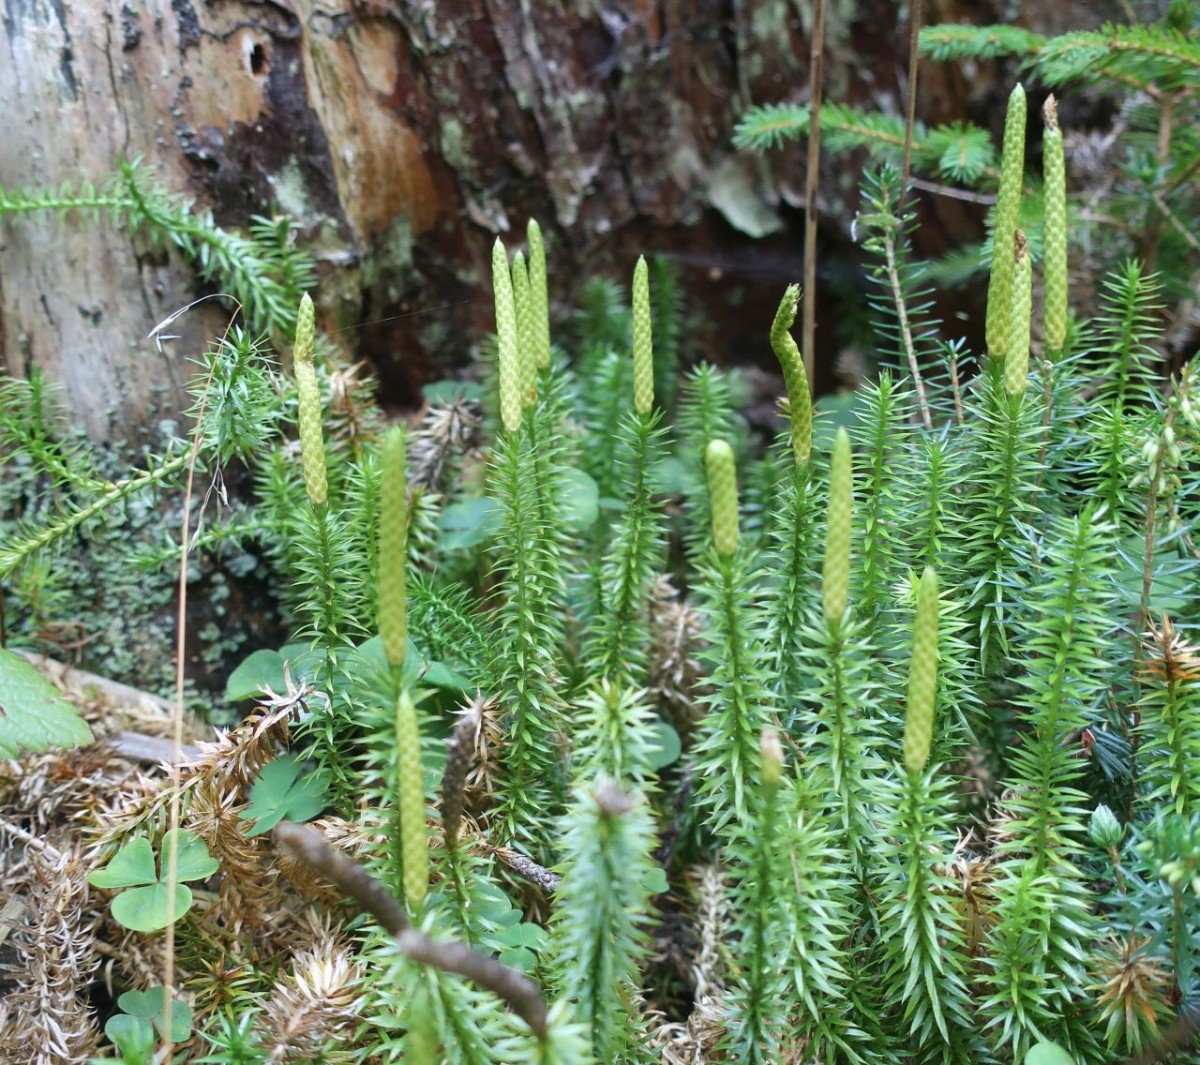 Auf dem Salten in der Krautschicht der Wälder neben Erica carnea und Calluna vulgaris: der Sprossende Bärlapp.